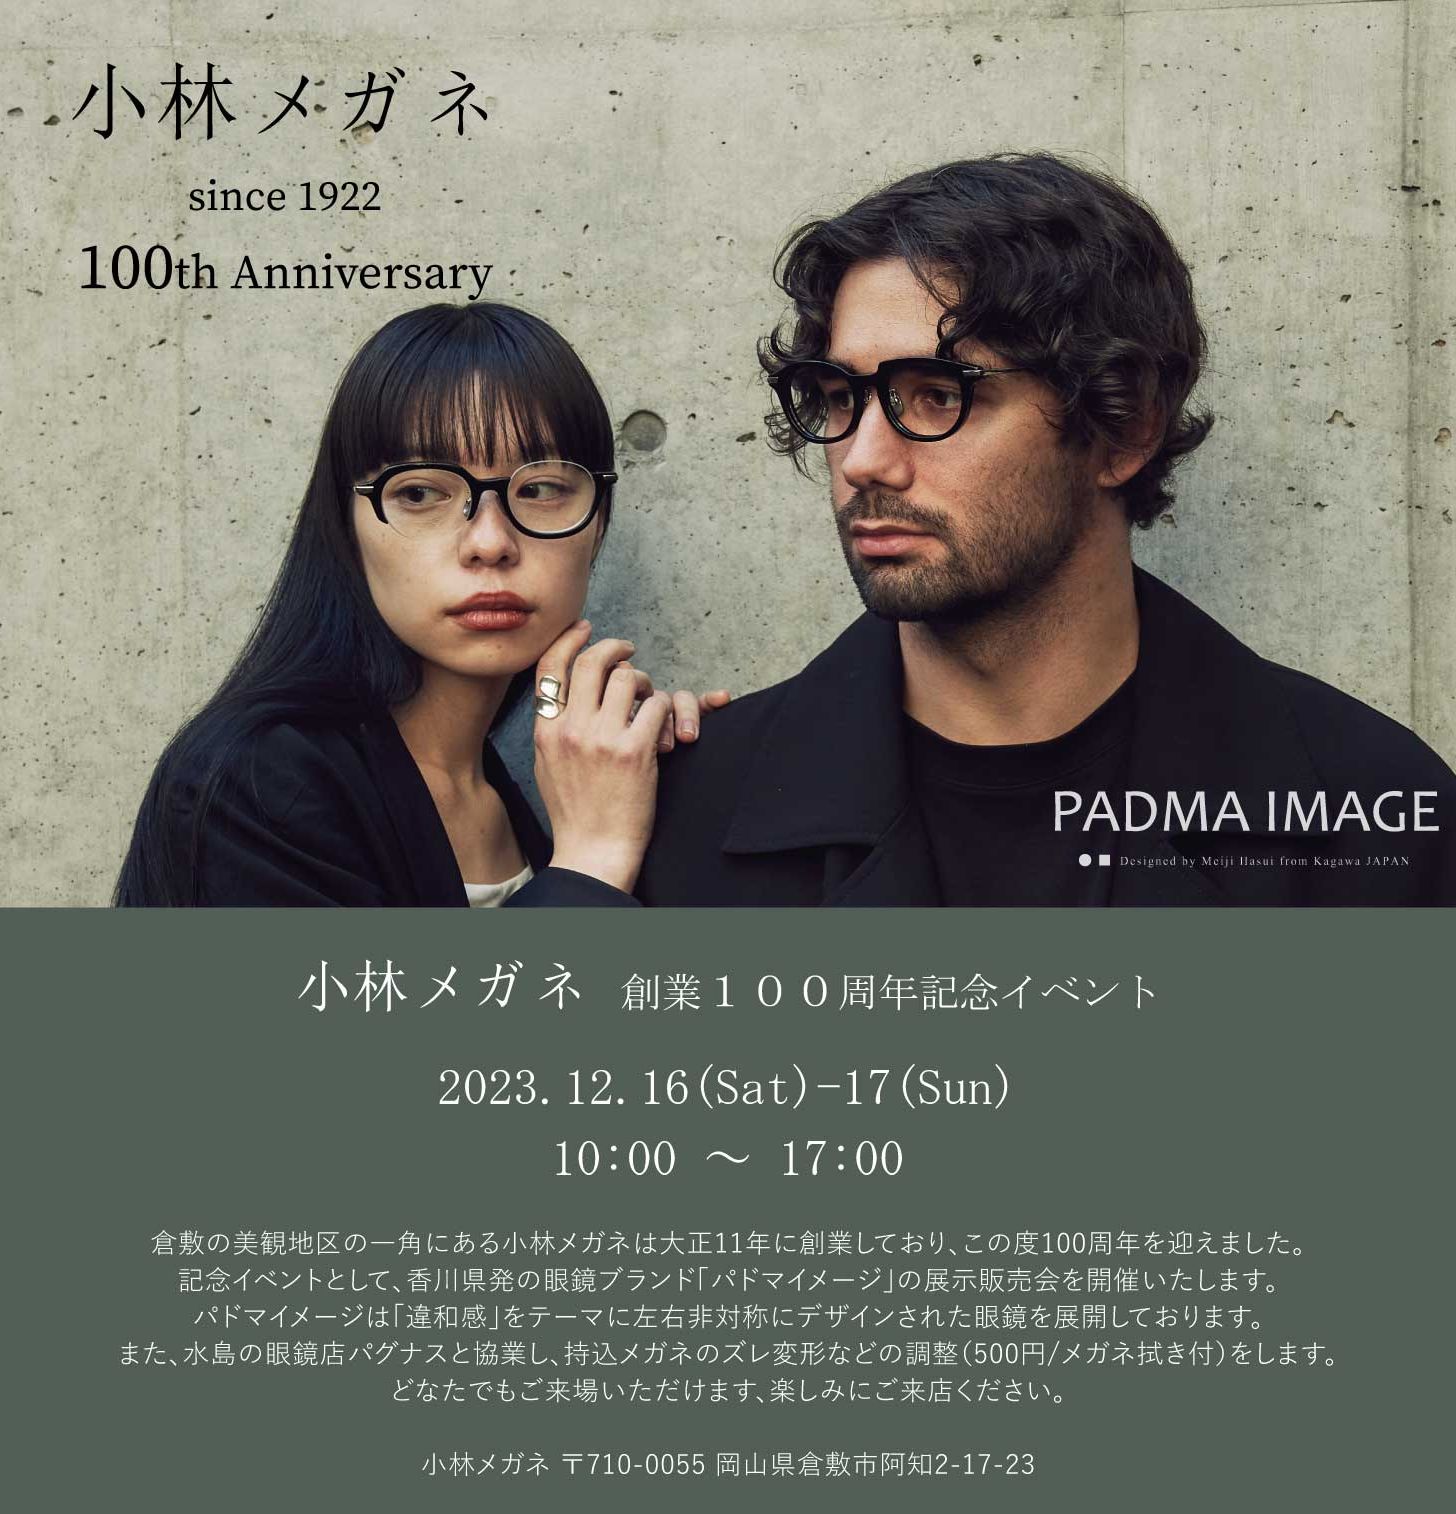 2023/12/16-17 PADMA IMAGE in 倉敷(岡山県)